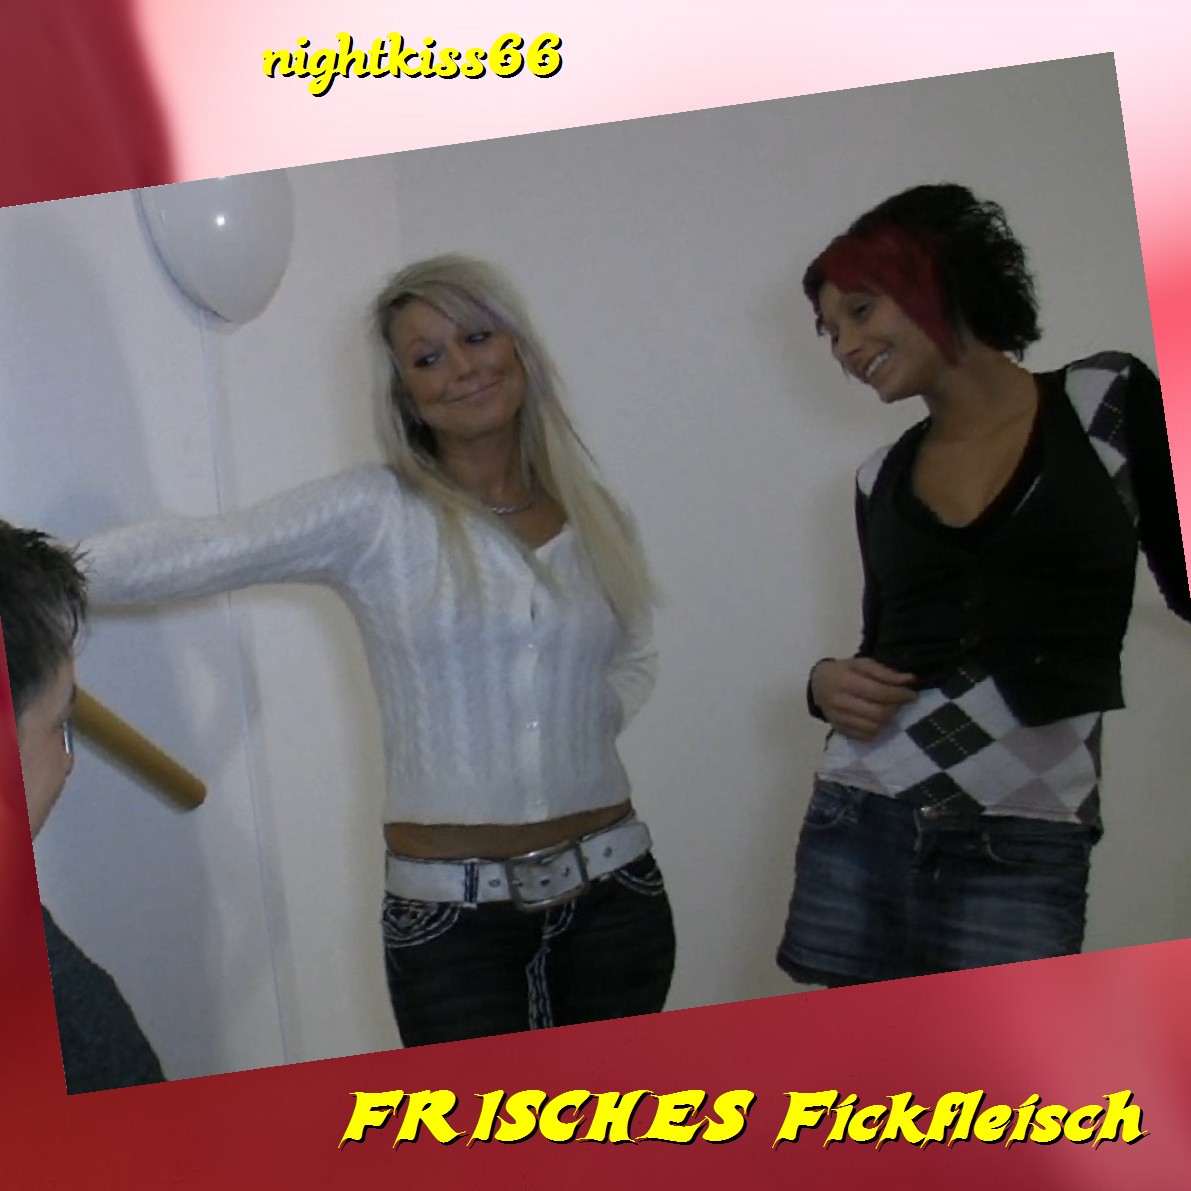 nightkiss66 - Kostenlose Video Stream Vorschau - 98809